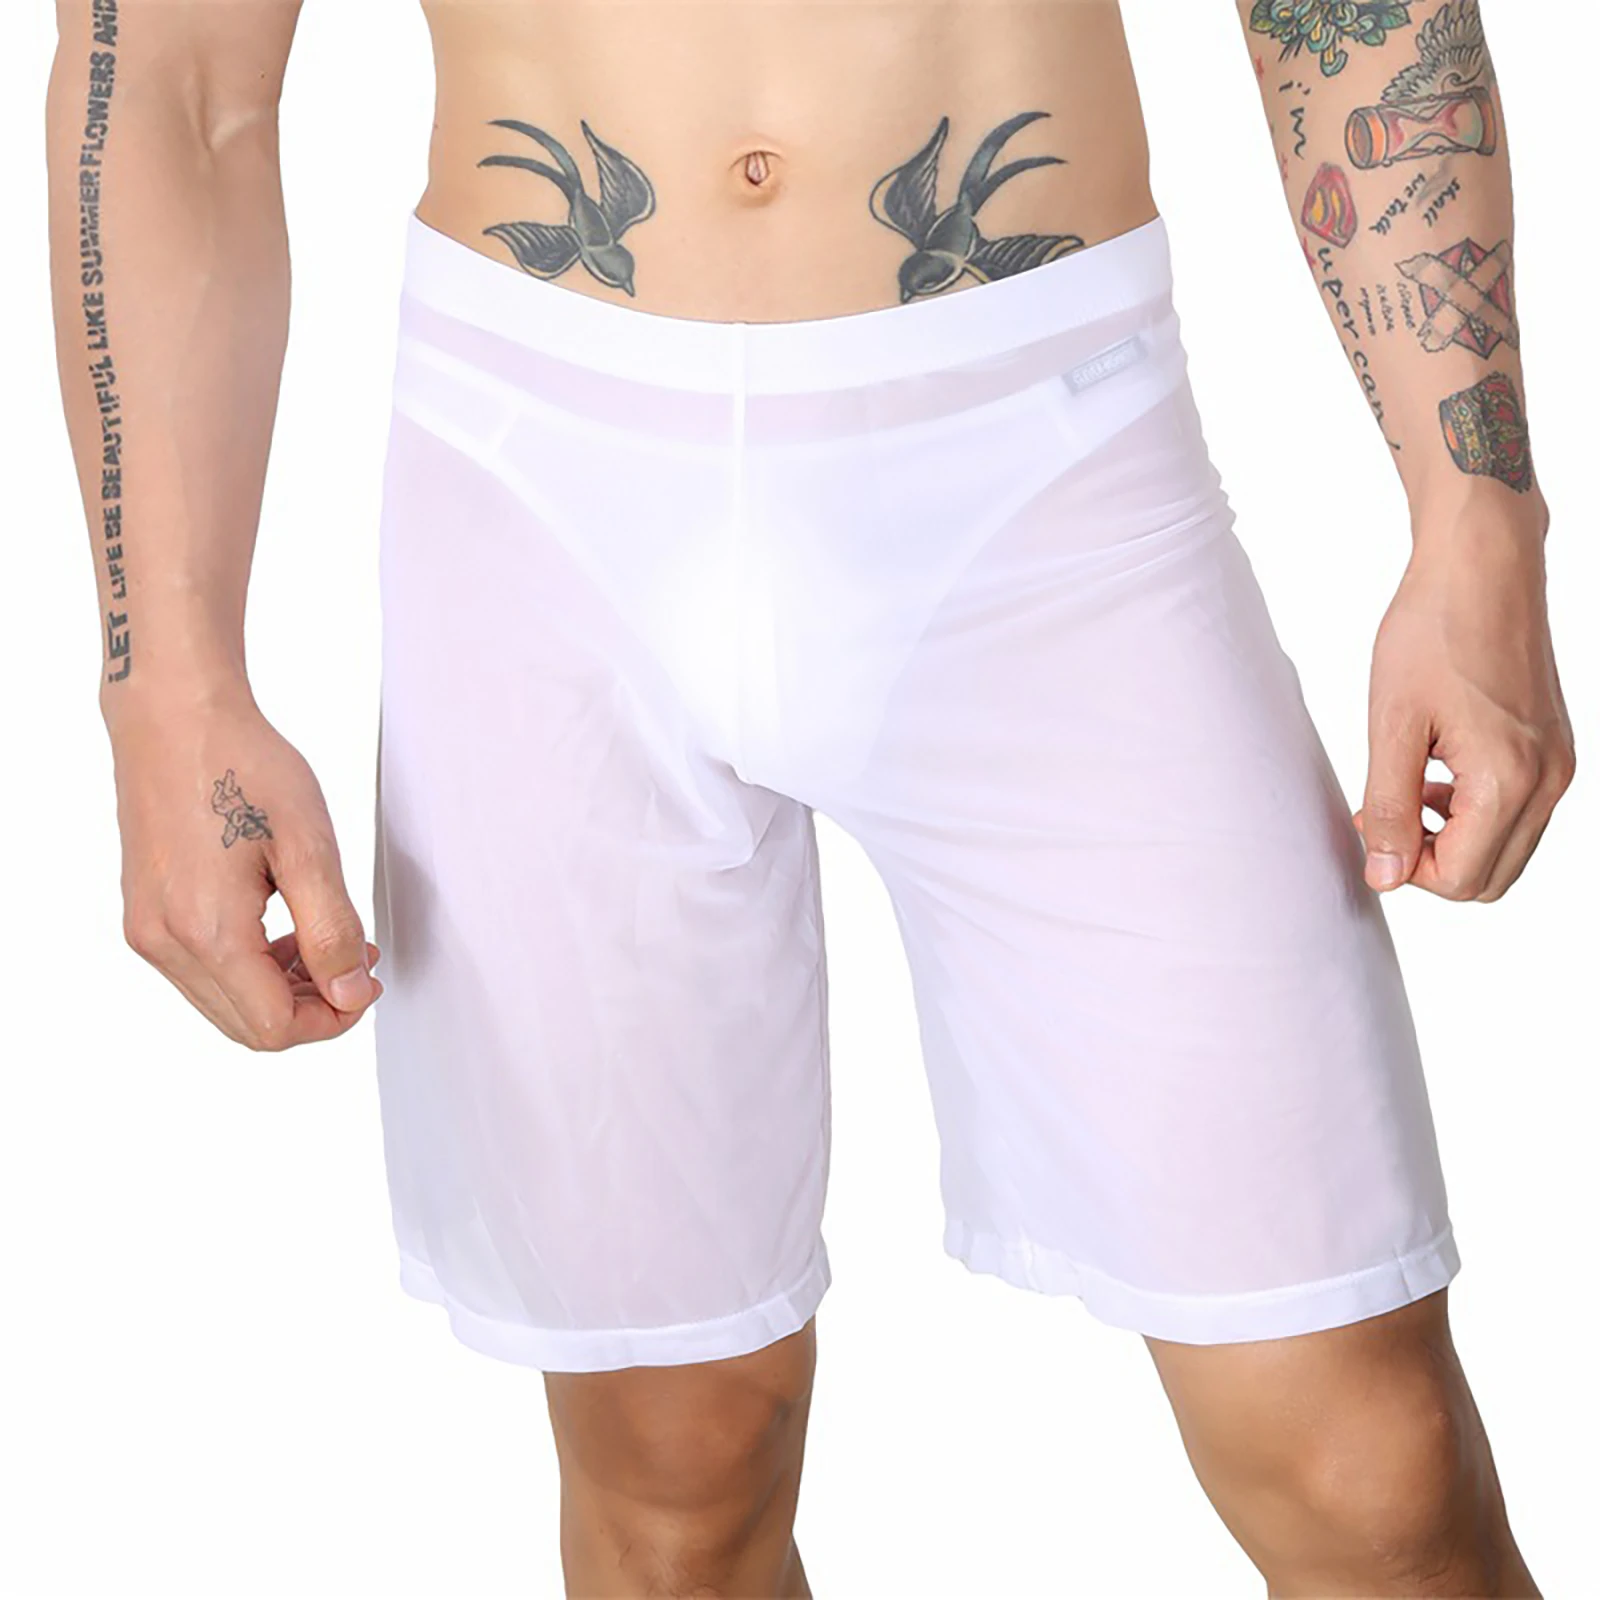 Mens Shorts Sheer Lounge Pants Casual Shorts Underwear Sexy See Through Transparent Shorts Pants Mes